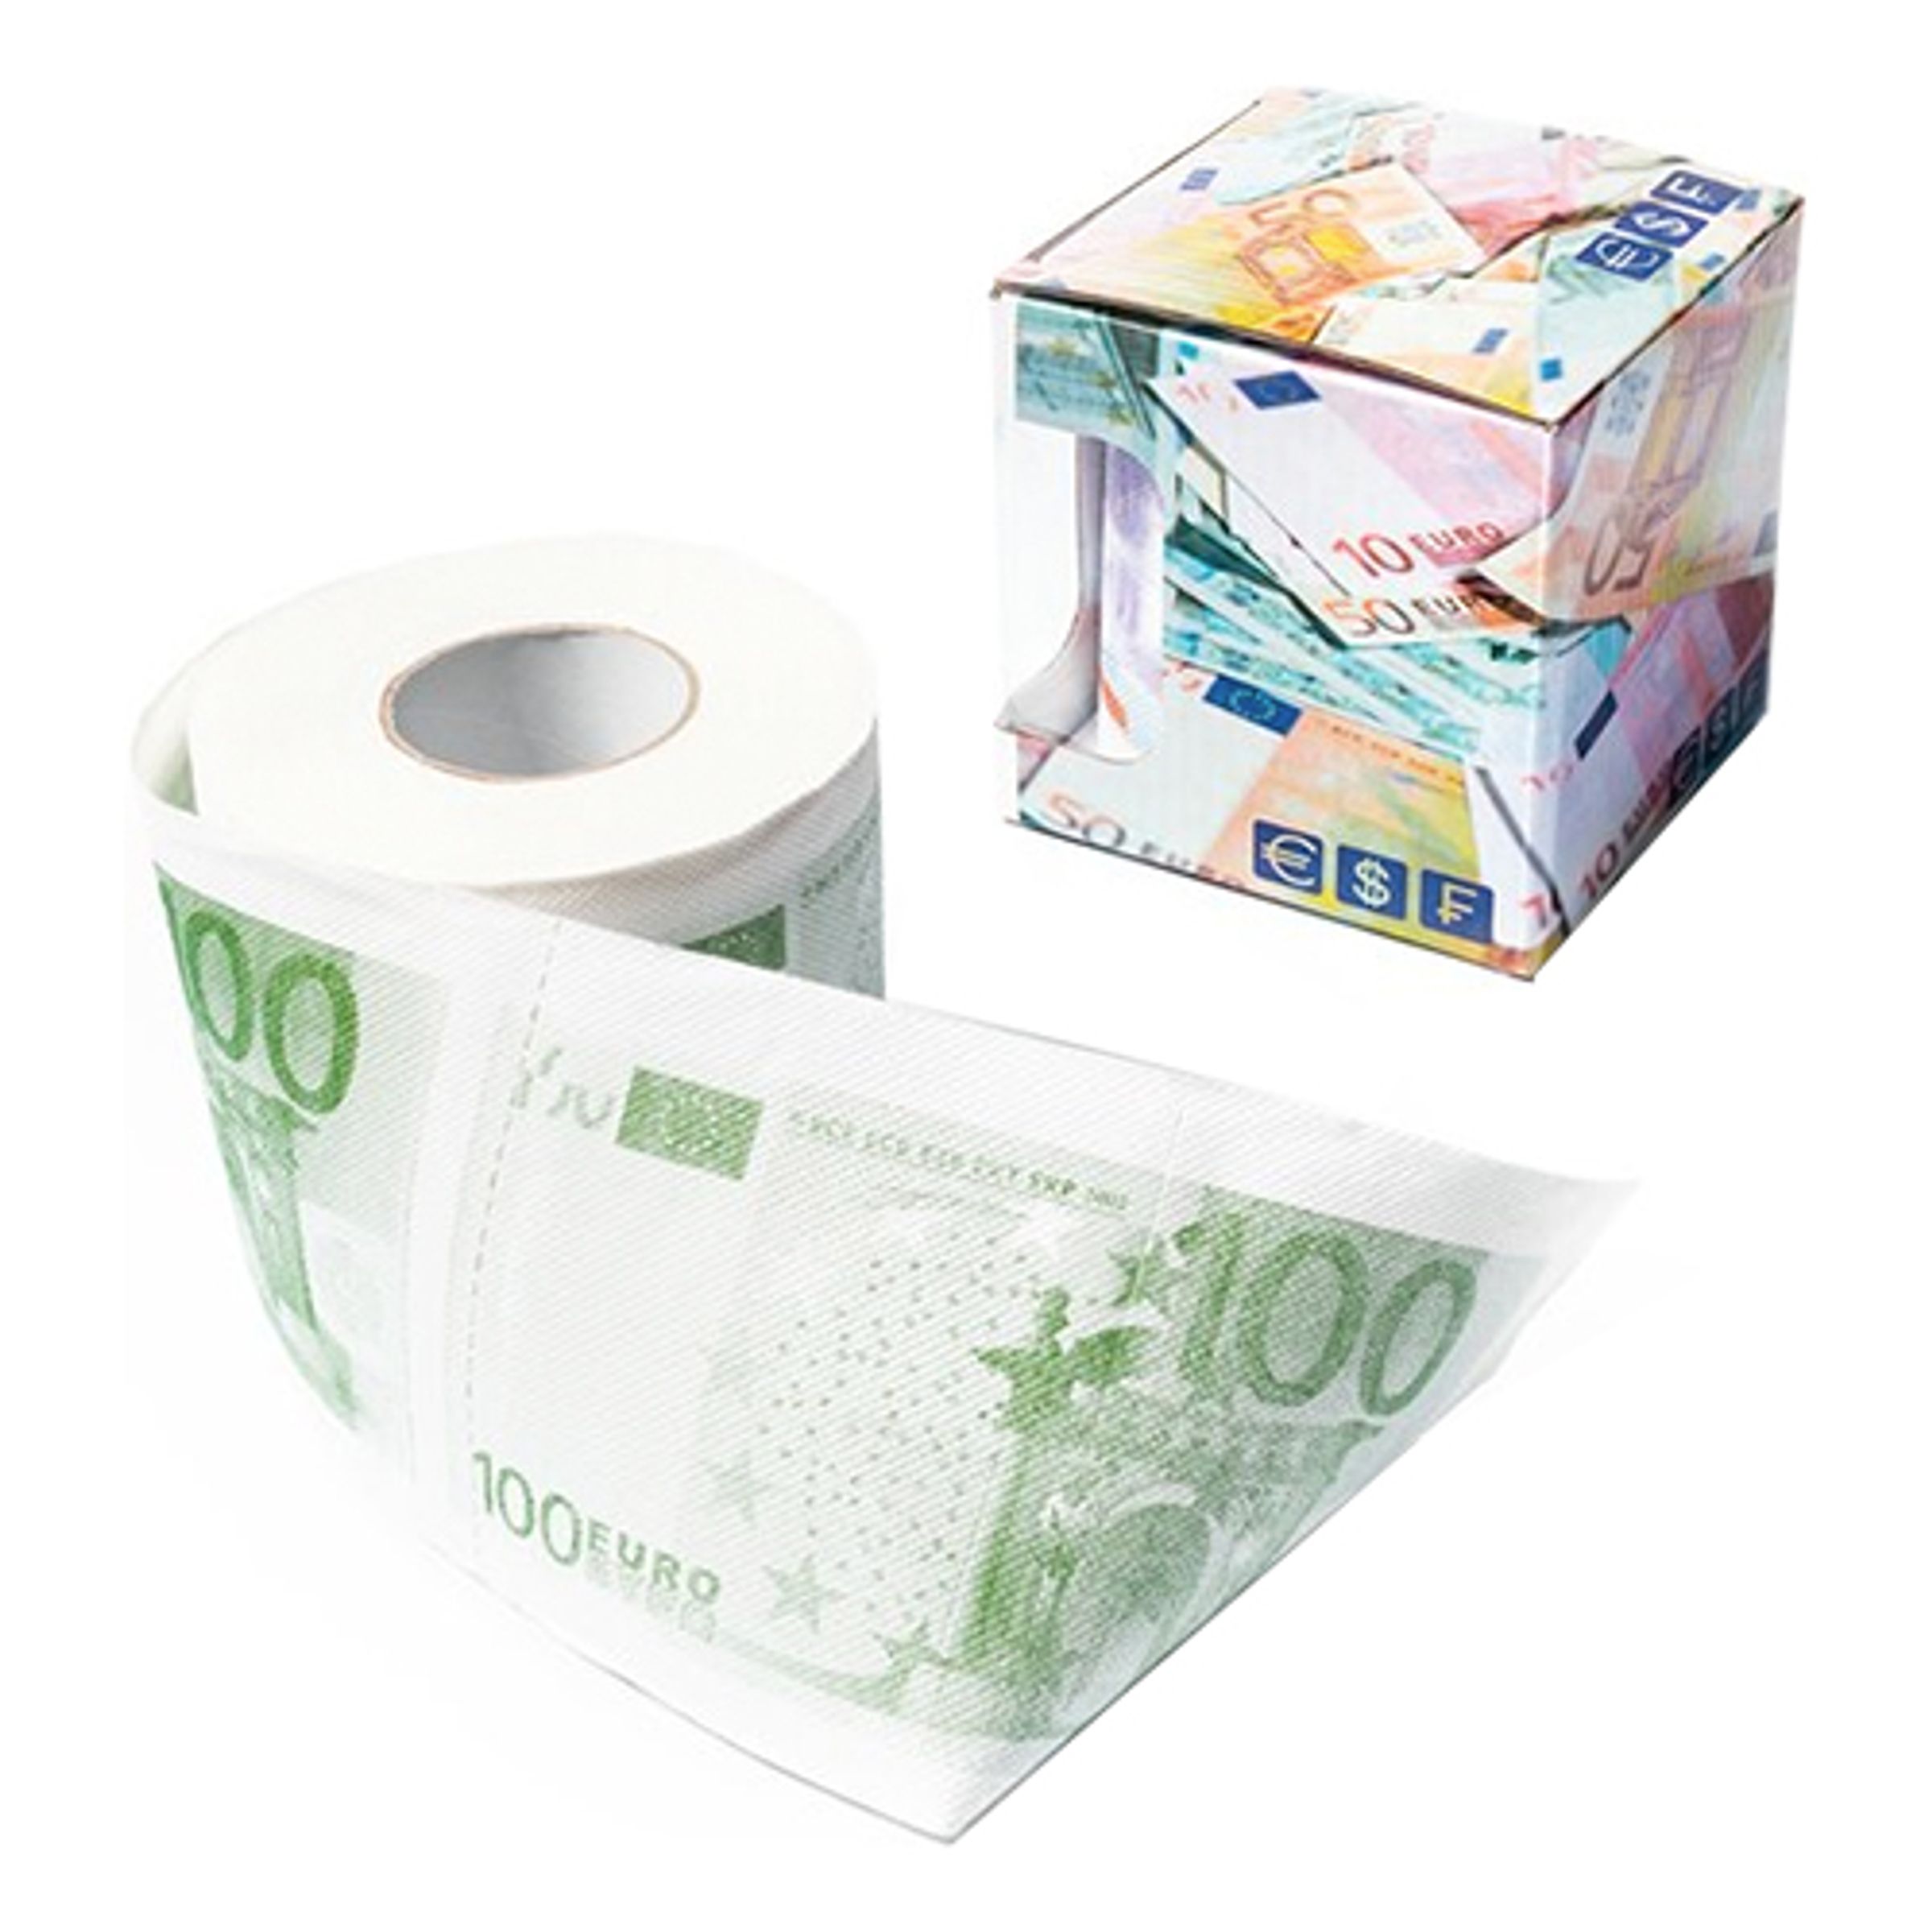 100 EUR Toalettpapper